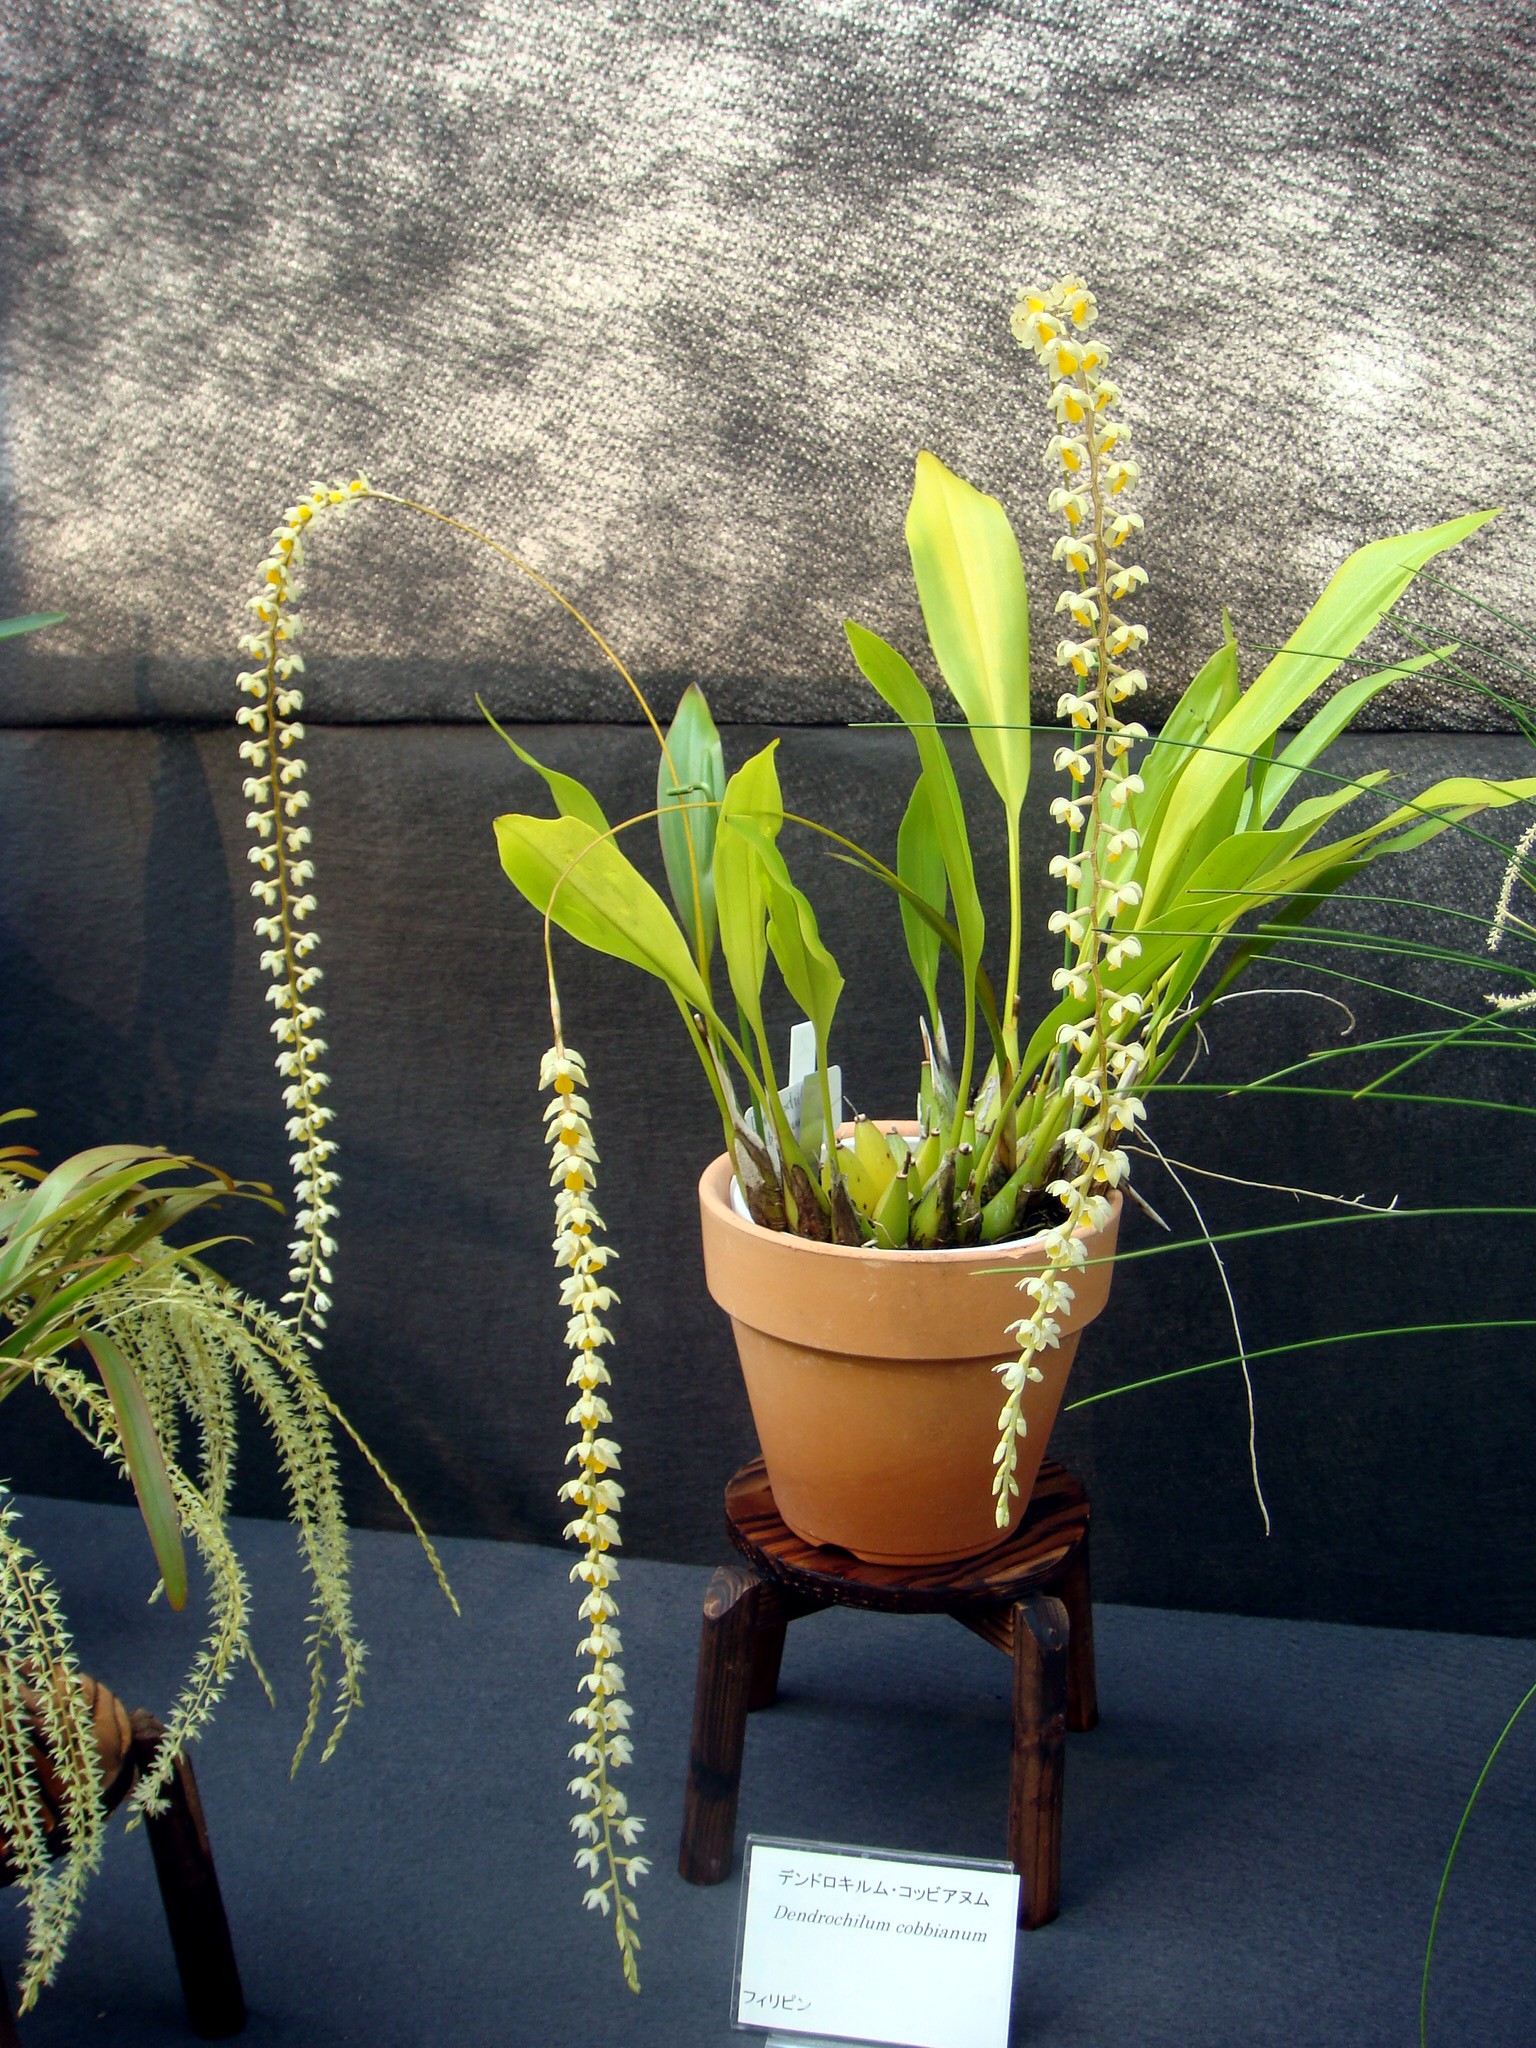 http://orchids.la.coocan.jp/Dendrochilum/Dendrochilum%20cobbianum/DSC05412.JPG